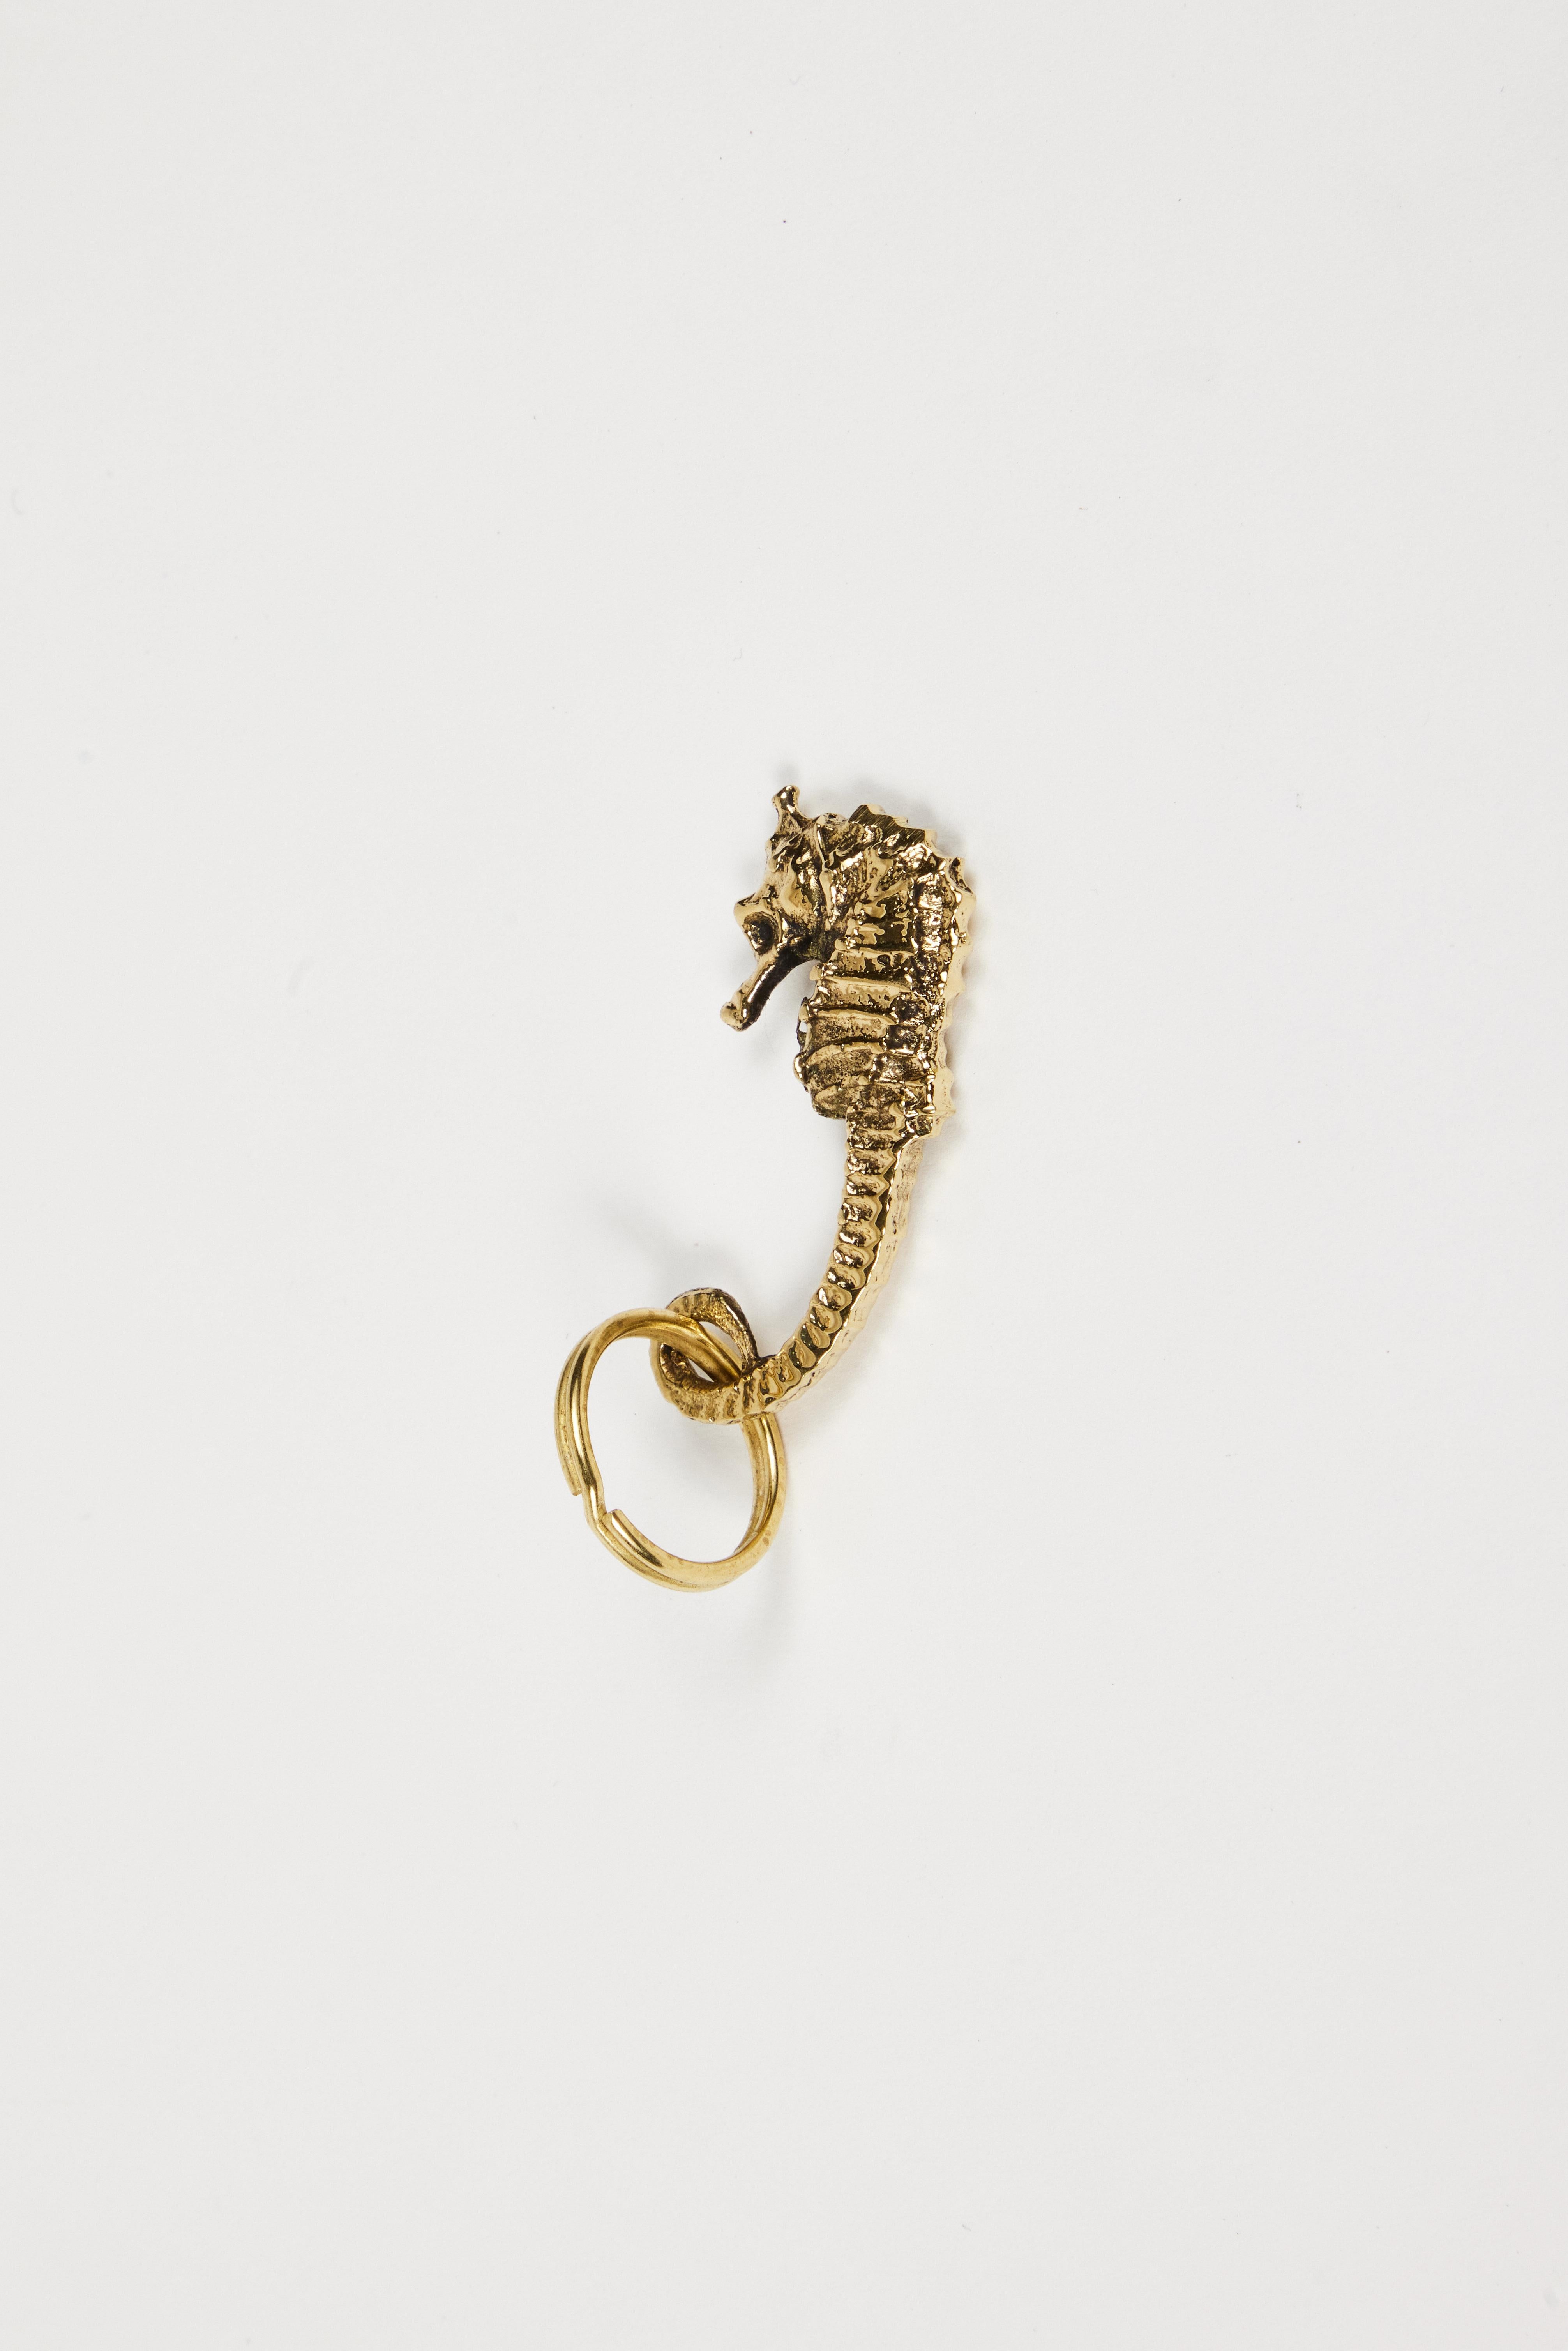 Carl Auböck Modell #5655 'Seepferdchen' Messingfigur Schlüsselanhänger. Dieses in den 1950er Jahren entworfene, unglaublich raffinierte und skulpturale Objekt ist aus poliertem Messing handgefertigt. 

Der Preis gilt pro Stück. Einer auf Lager und